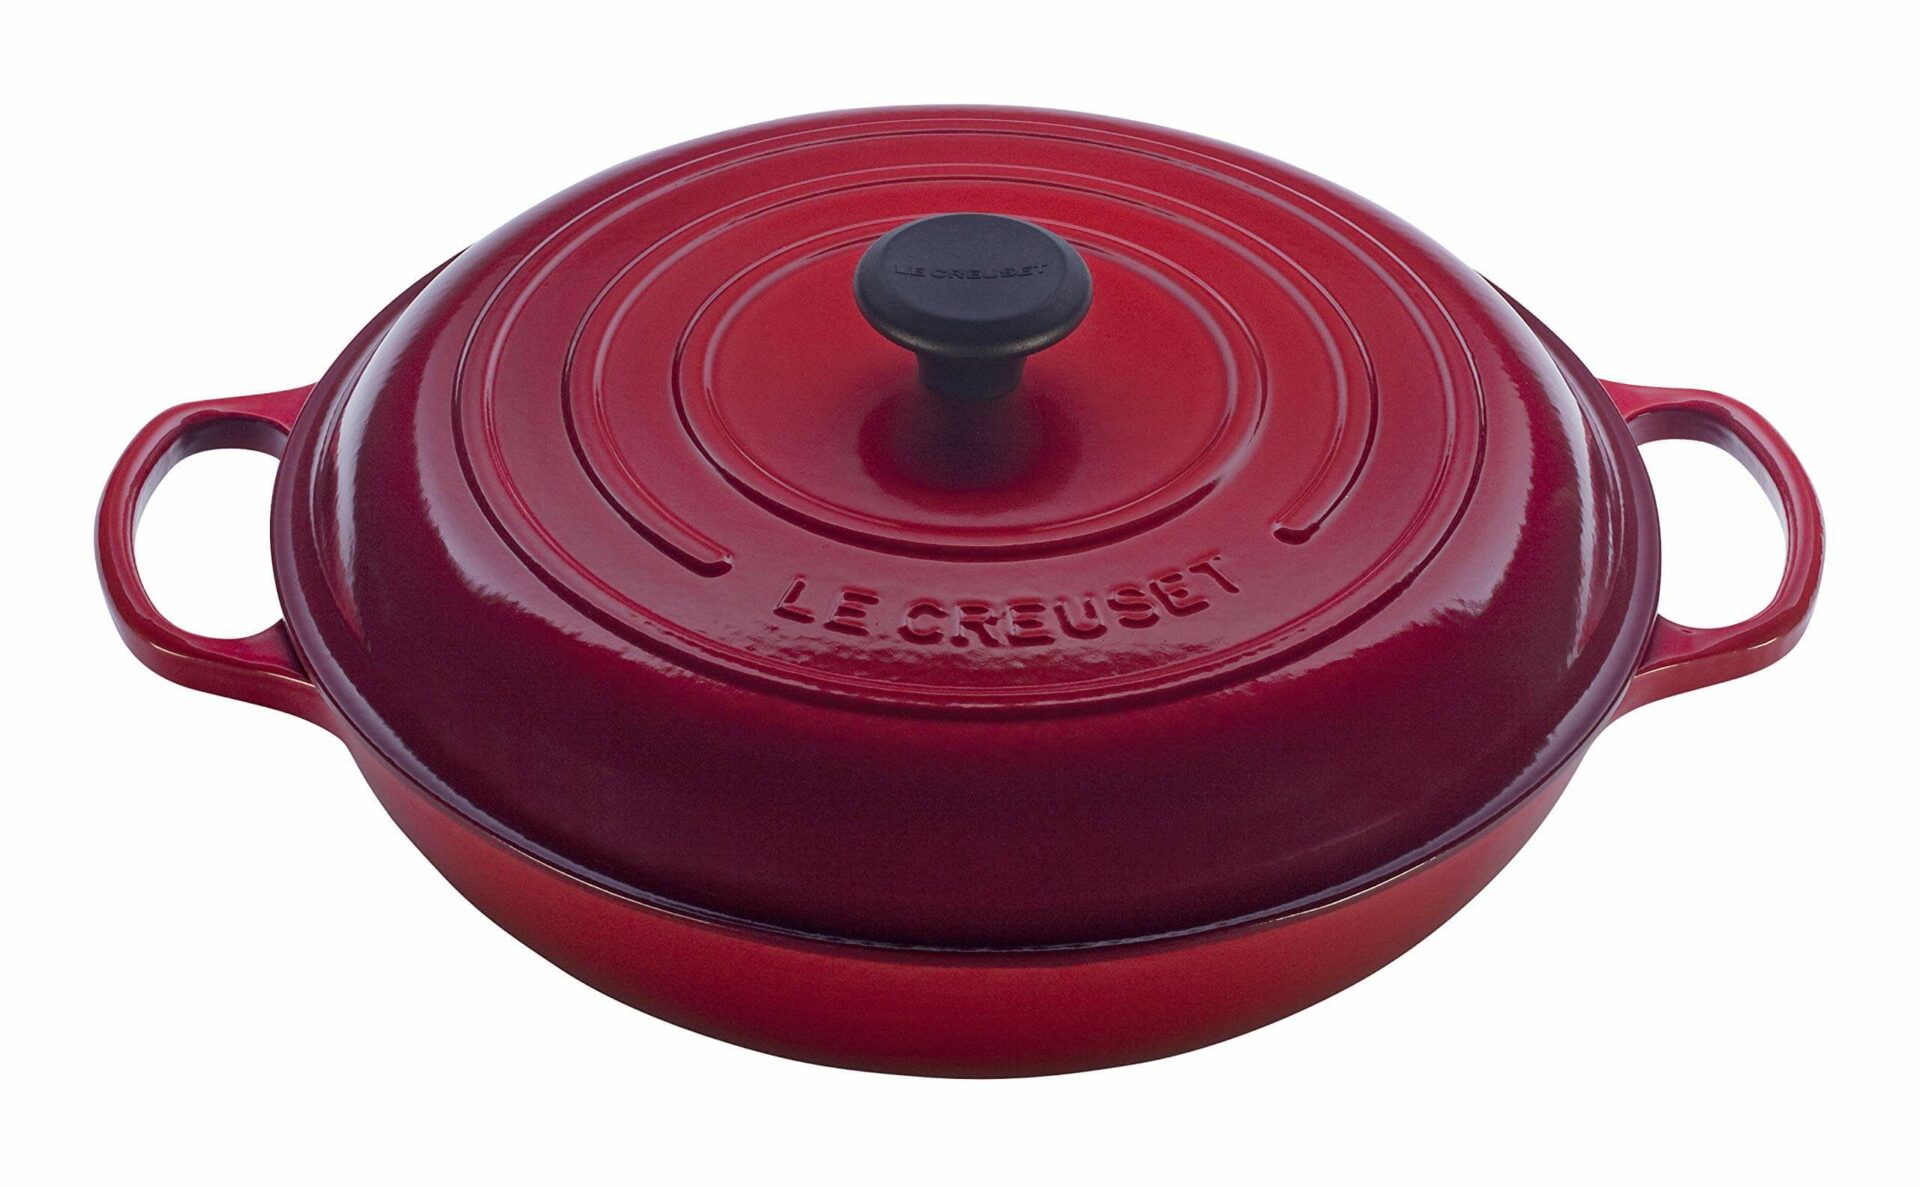 Le Creuset Signature Enameled 3-3/4 Qt Round Braiser, casserole dish, baking dish